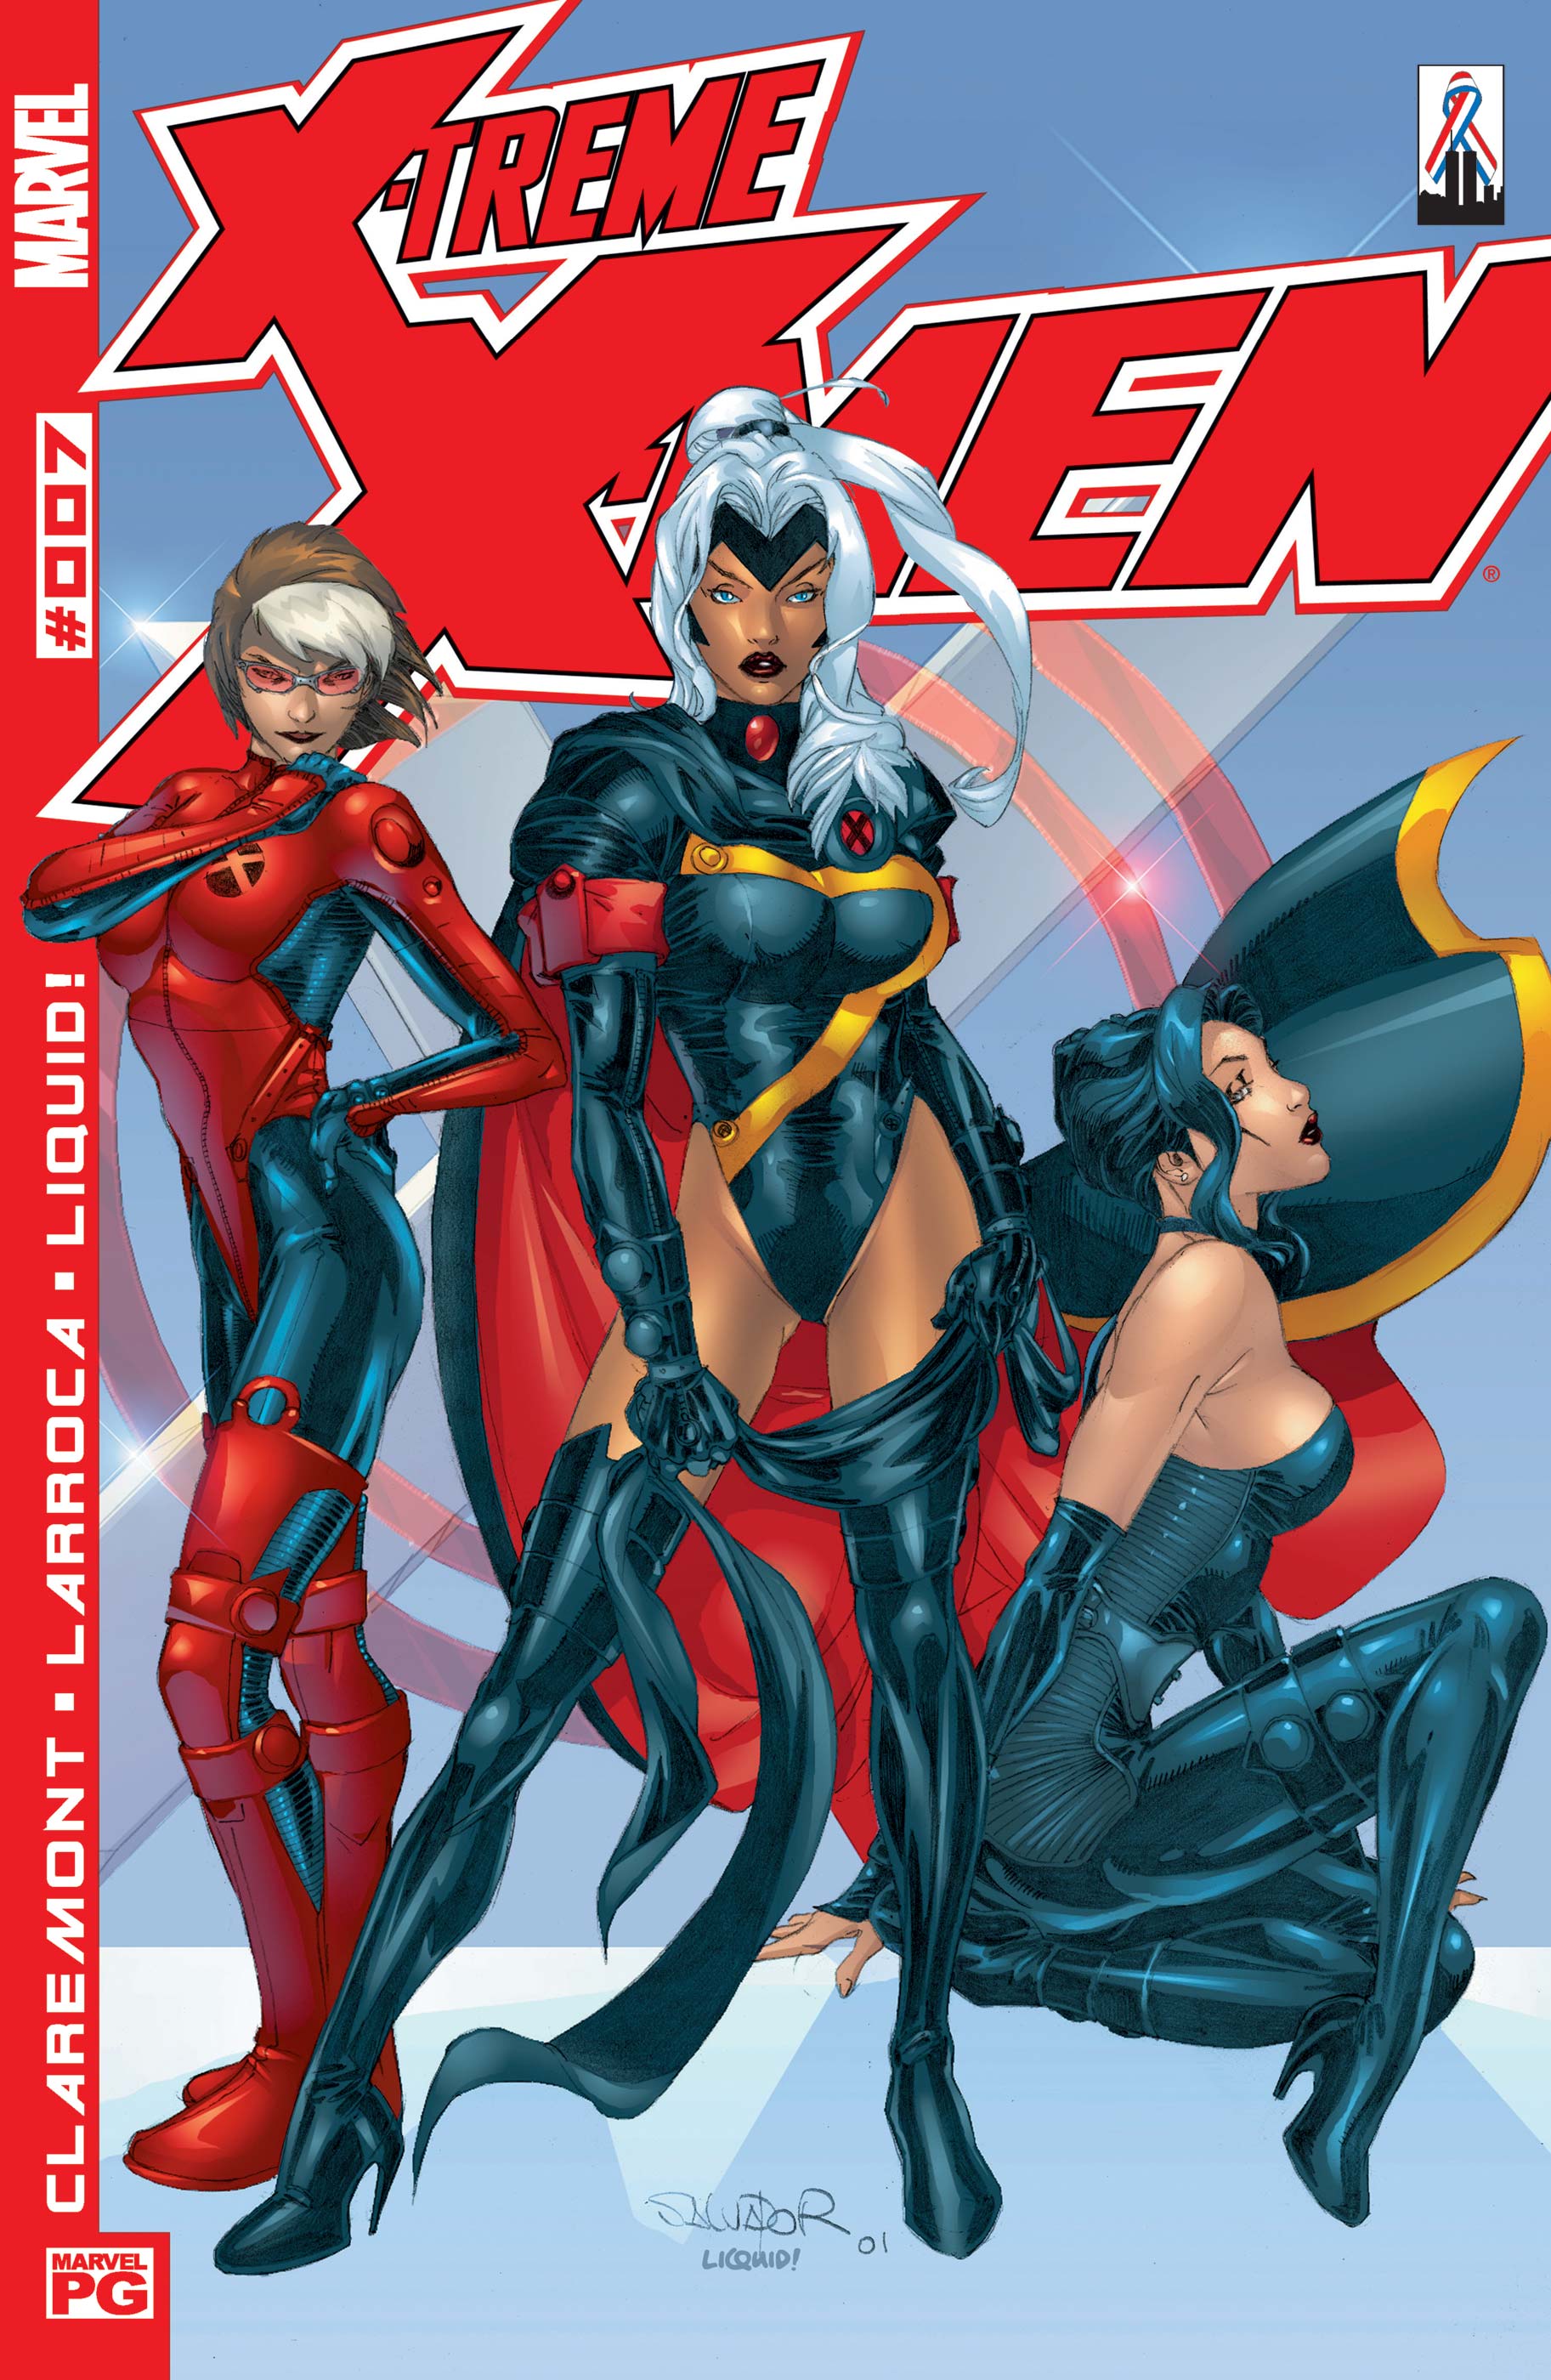 X-Treme X-Men (2001) #7